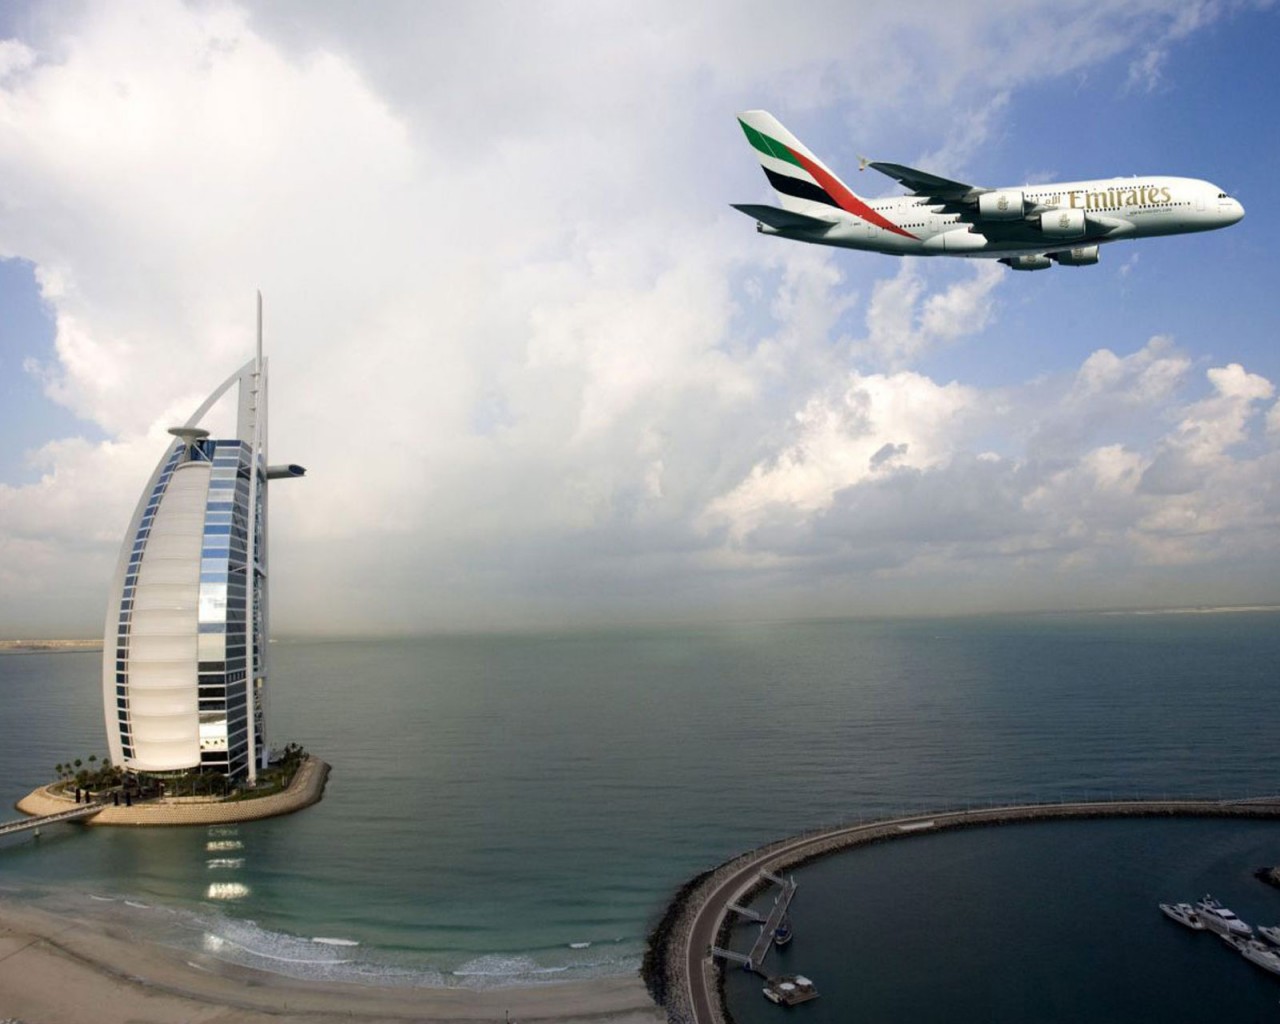 fond d'écran emirates hd,compagnie aérienne,avion,ciel,génie aérospatial,avion